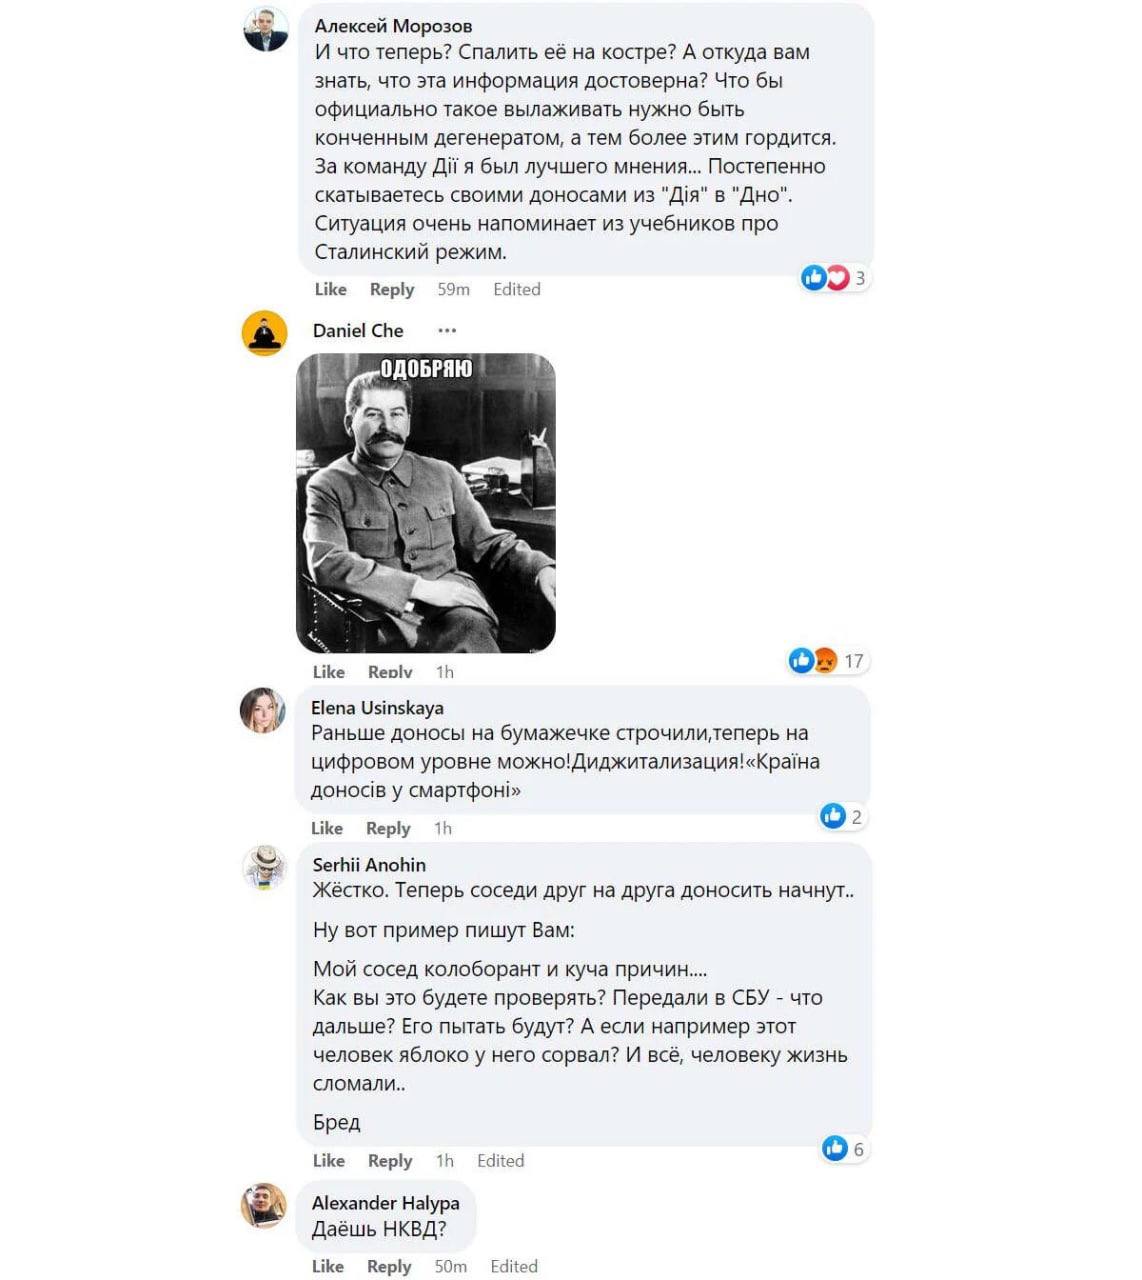 Скриншот 3 с комментариями